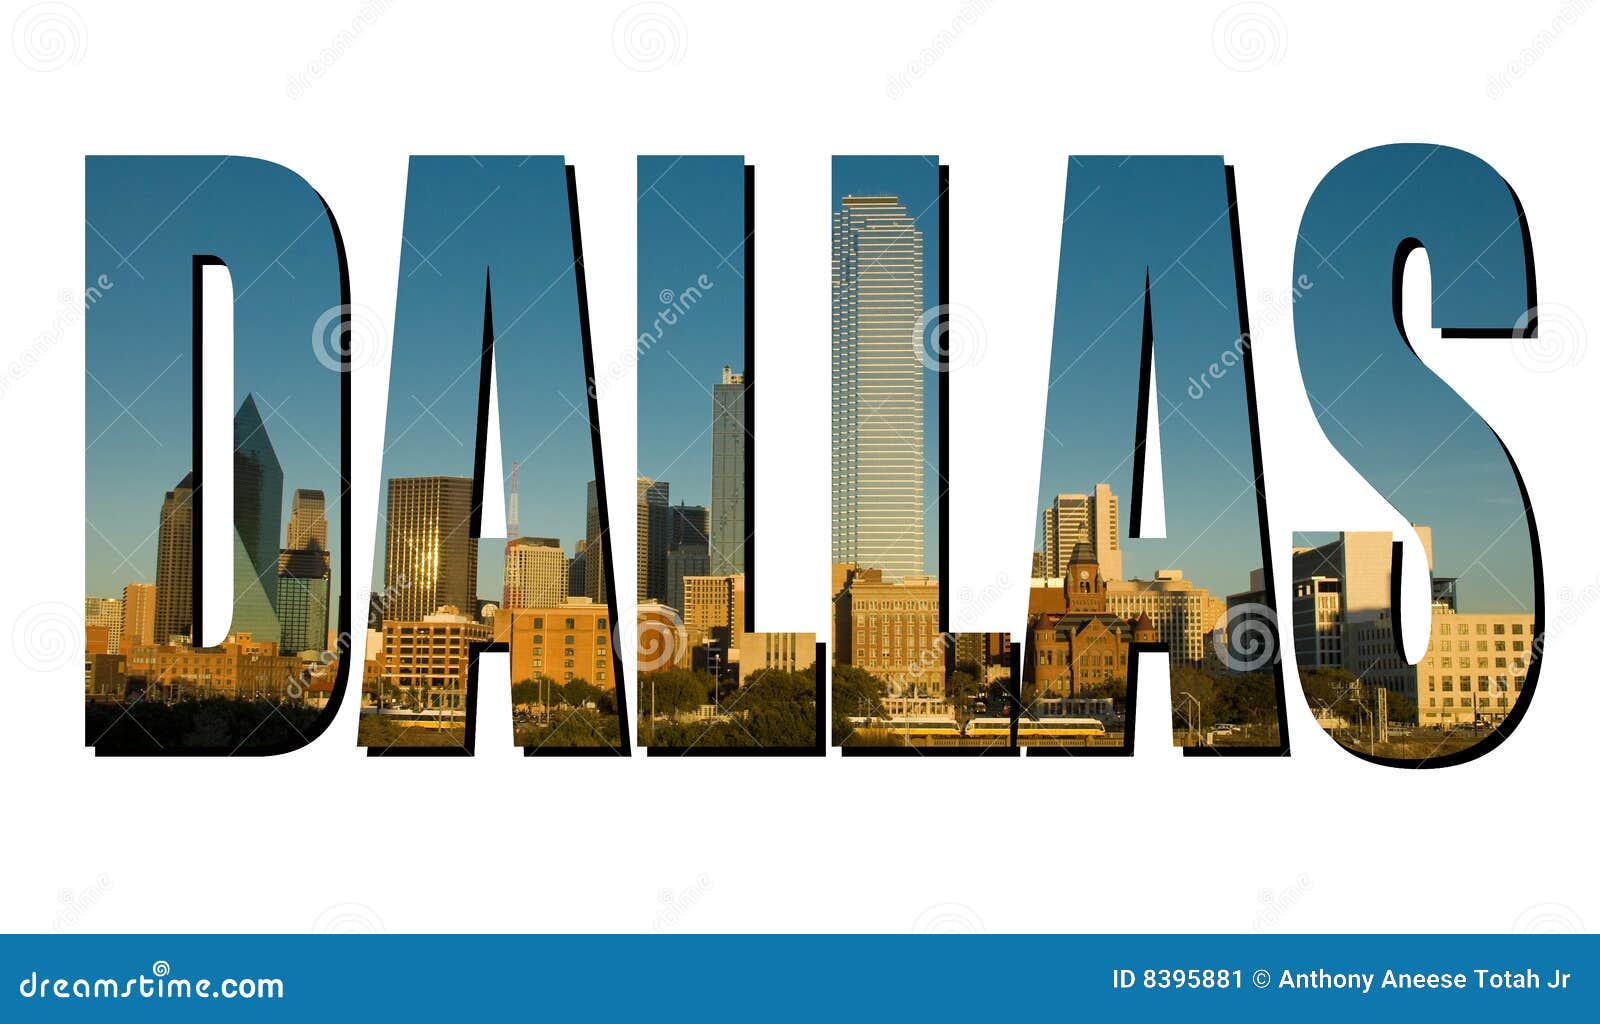 Das Wort Dallas gebildet von einer Tagesfotographie von Dallas Texas.